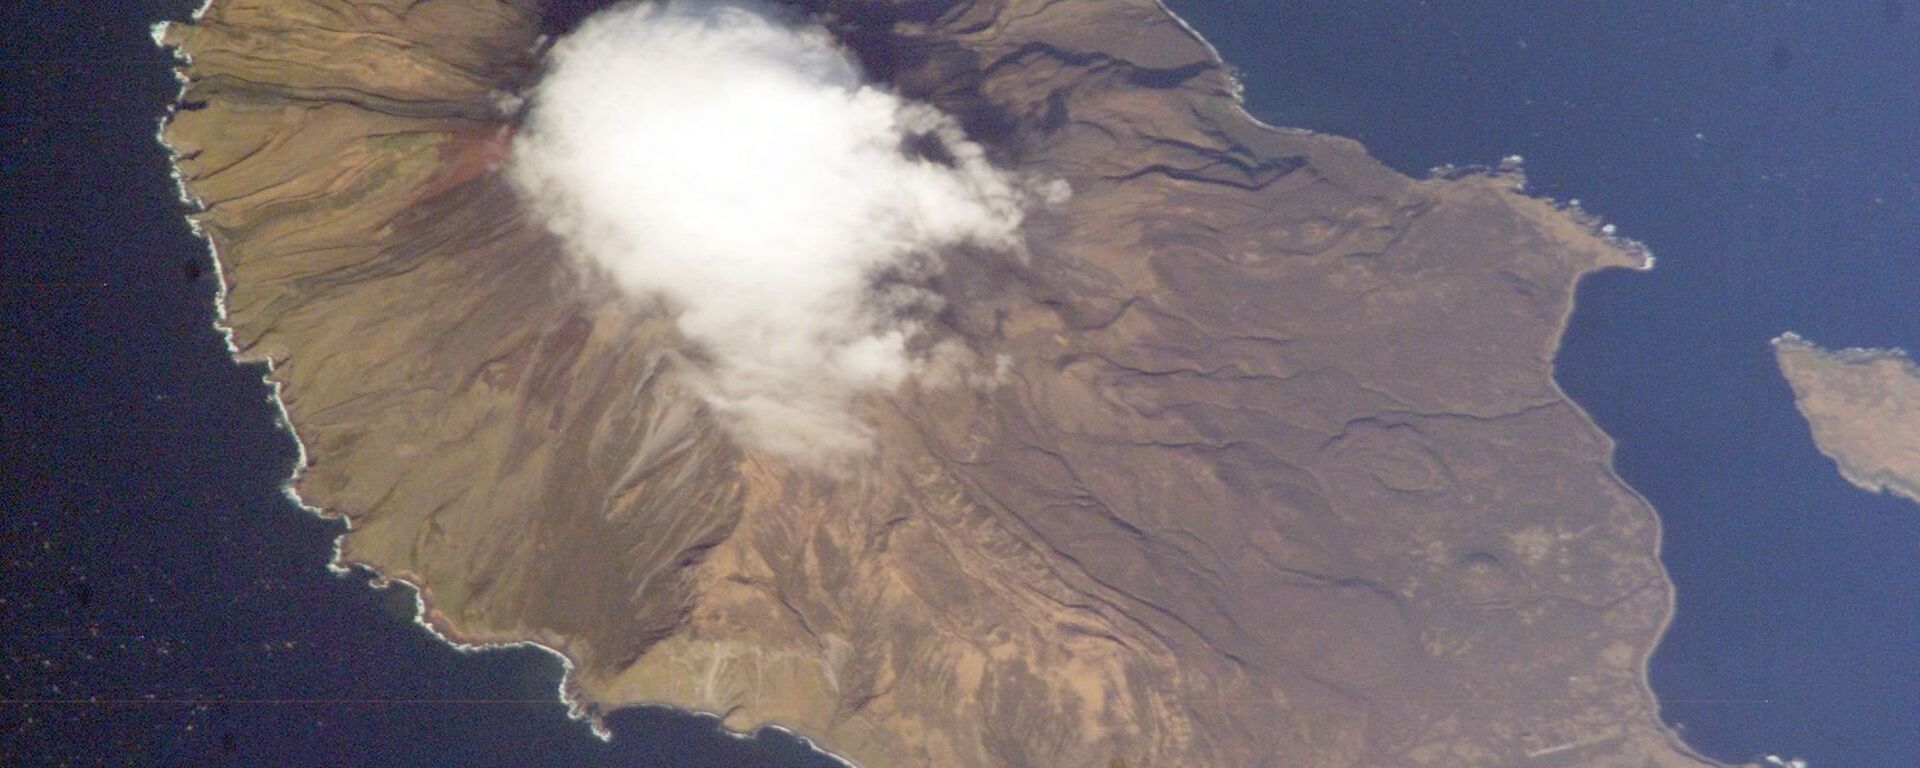 Isla Matua, archipiélago de las Kuriles - Sputnik Mundo, 1920, 16.12.2021